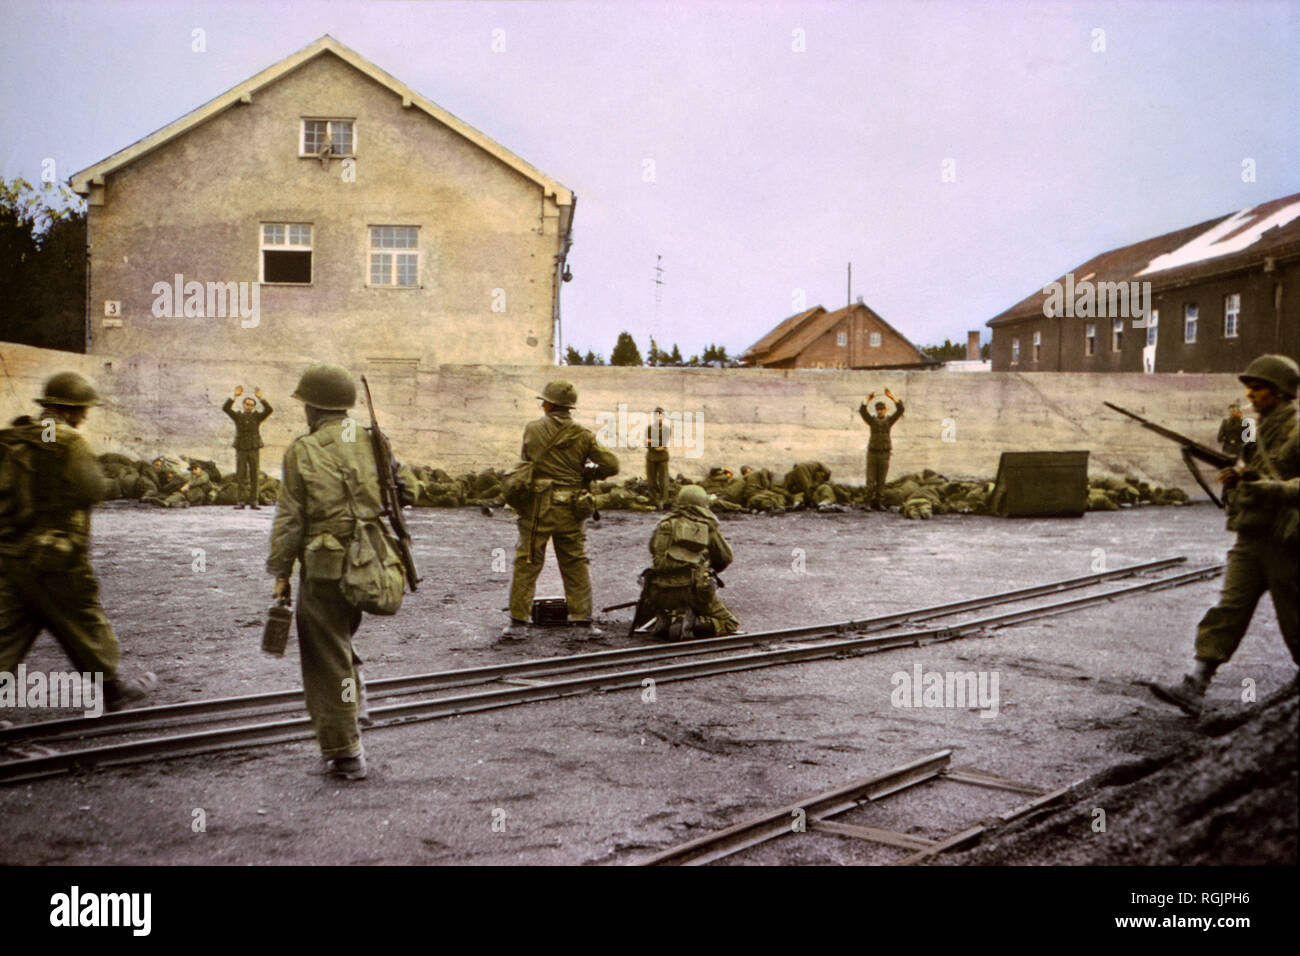 Erfassen von SS-Wachen in Kohle Hof an Konzentrationslager von 42th Infantry Division, U.S. 7. Armee, Dachau, Deutschland, Mitteleuropa Kampagne, die Alliierte Invasion in Deutschland, April 1945 Stockfoto